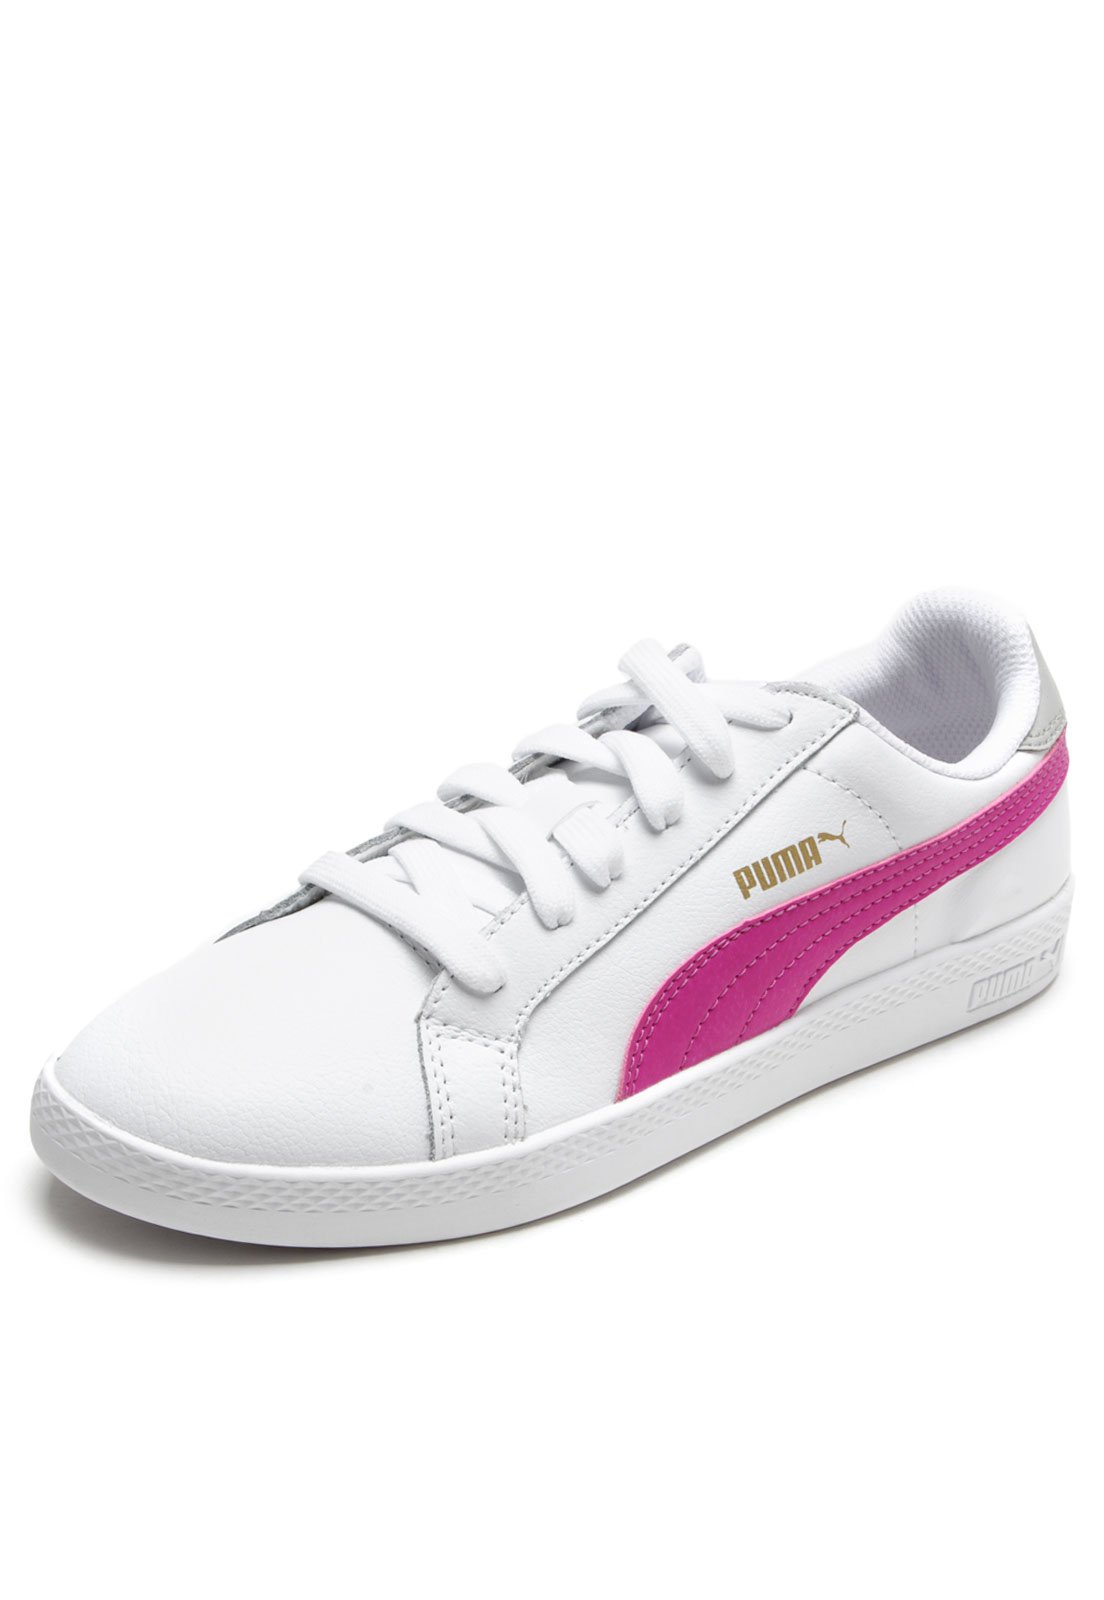 tenis puma branco com rosa